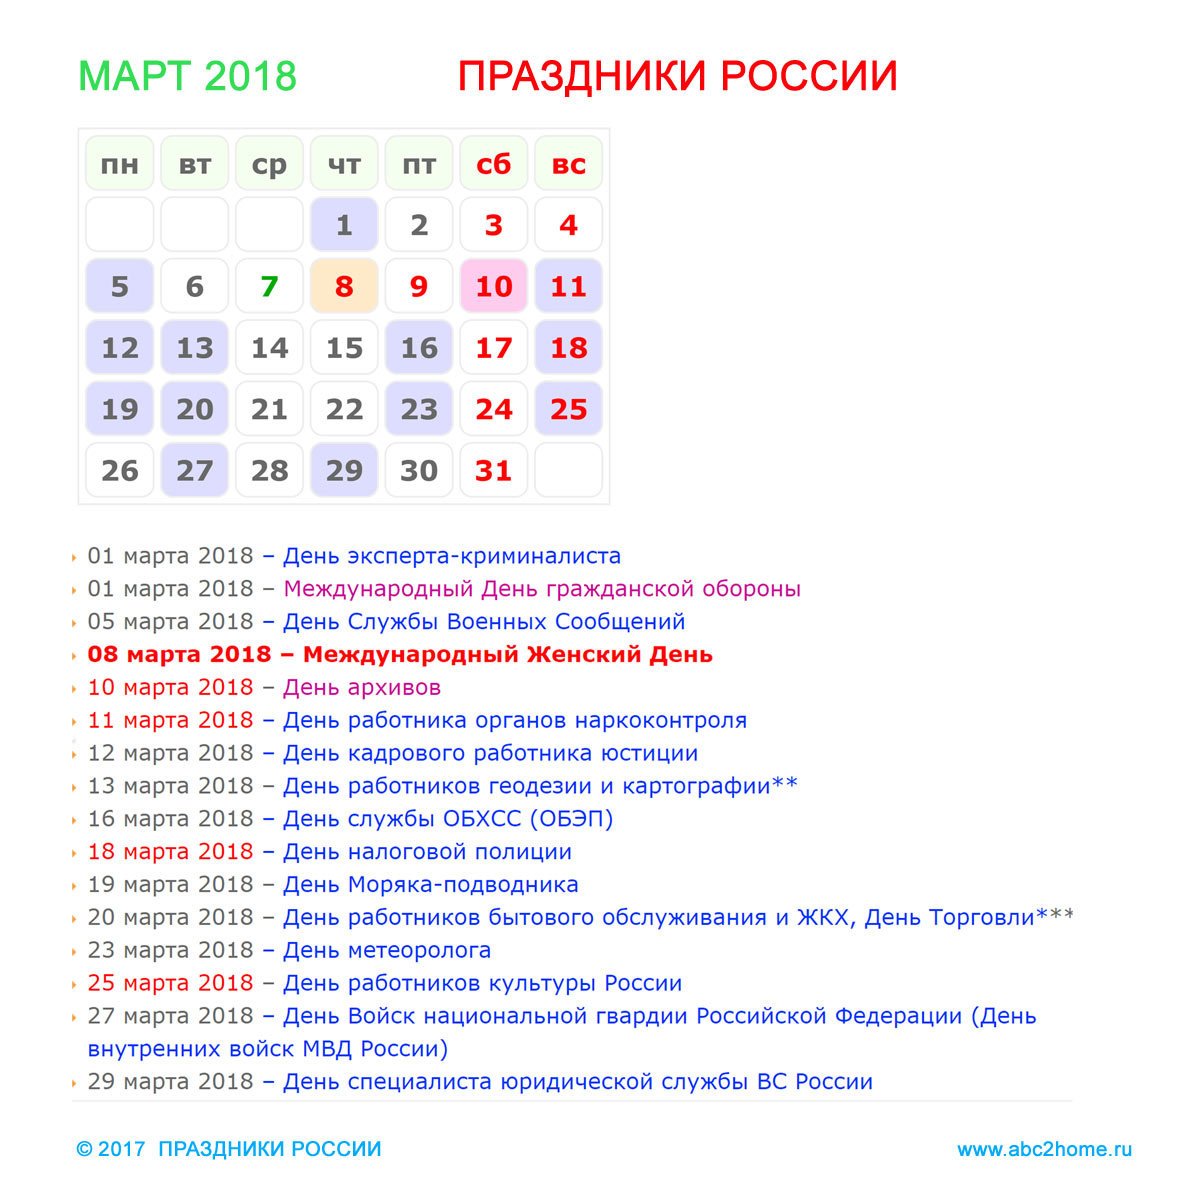 Даты международных дней. Праздники в марте. Календарь праздников в России. Какие праздникивр марте. Ближайшие календарные праздники в марте.